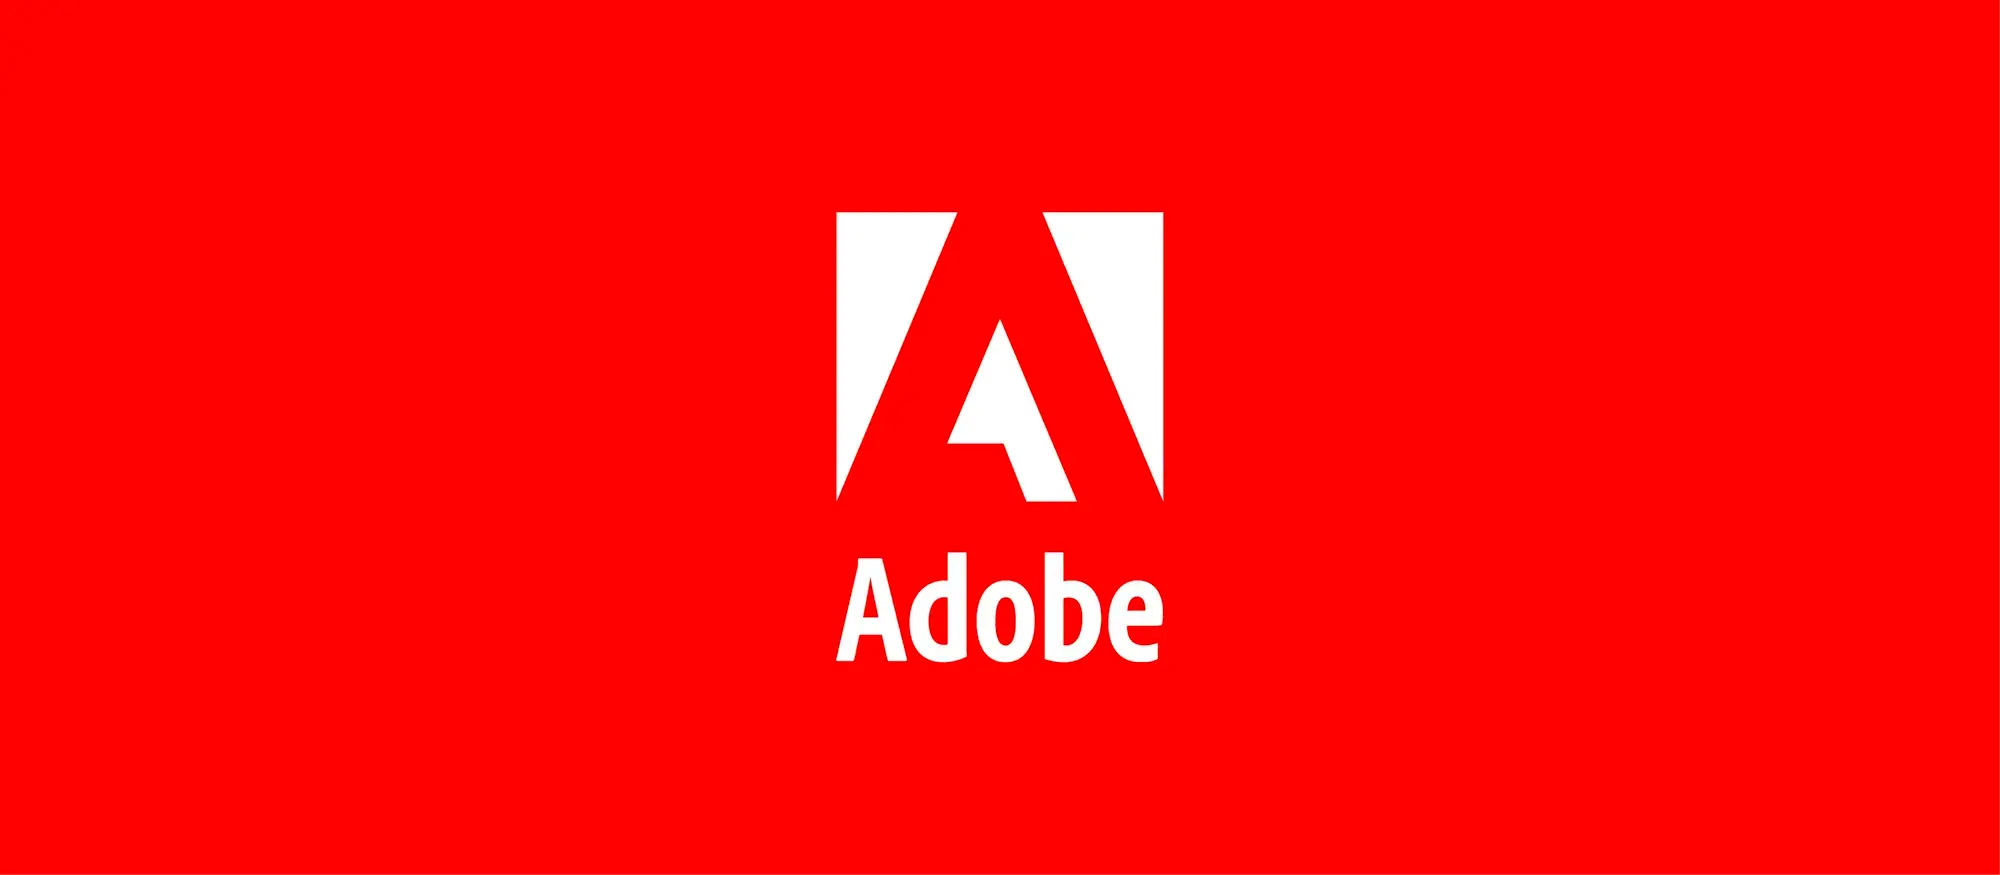 Adobe usa l'intelligenza artificiale per separare le tracce audio